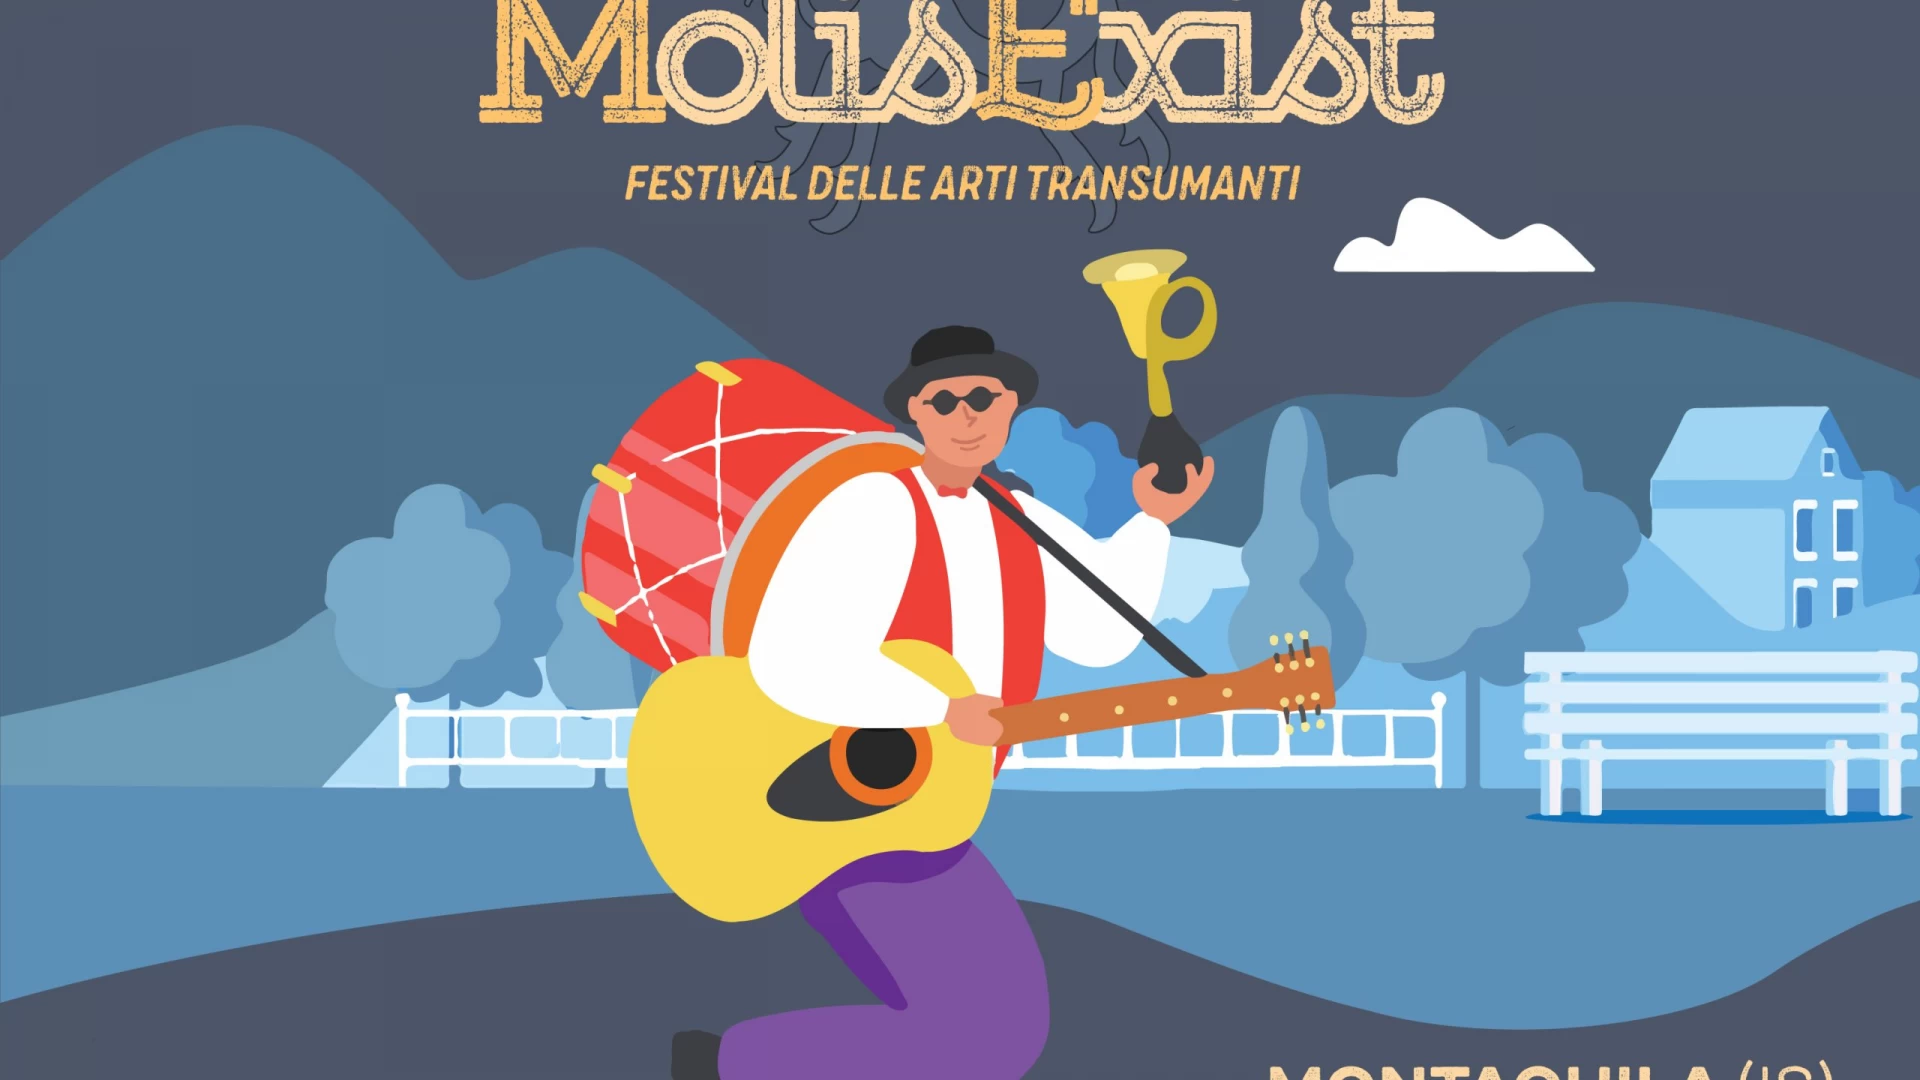 Festival delle arti transumanti, a Montaquila il 24 e 25 agosto la prima edizione di MolisExist